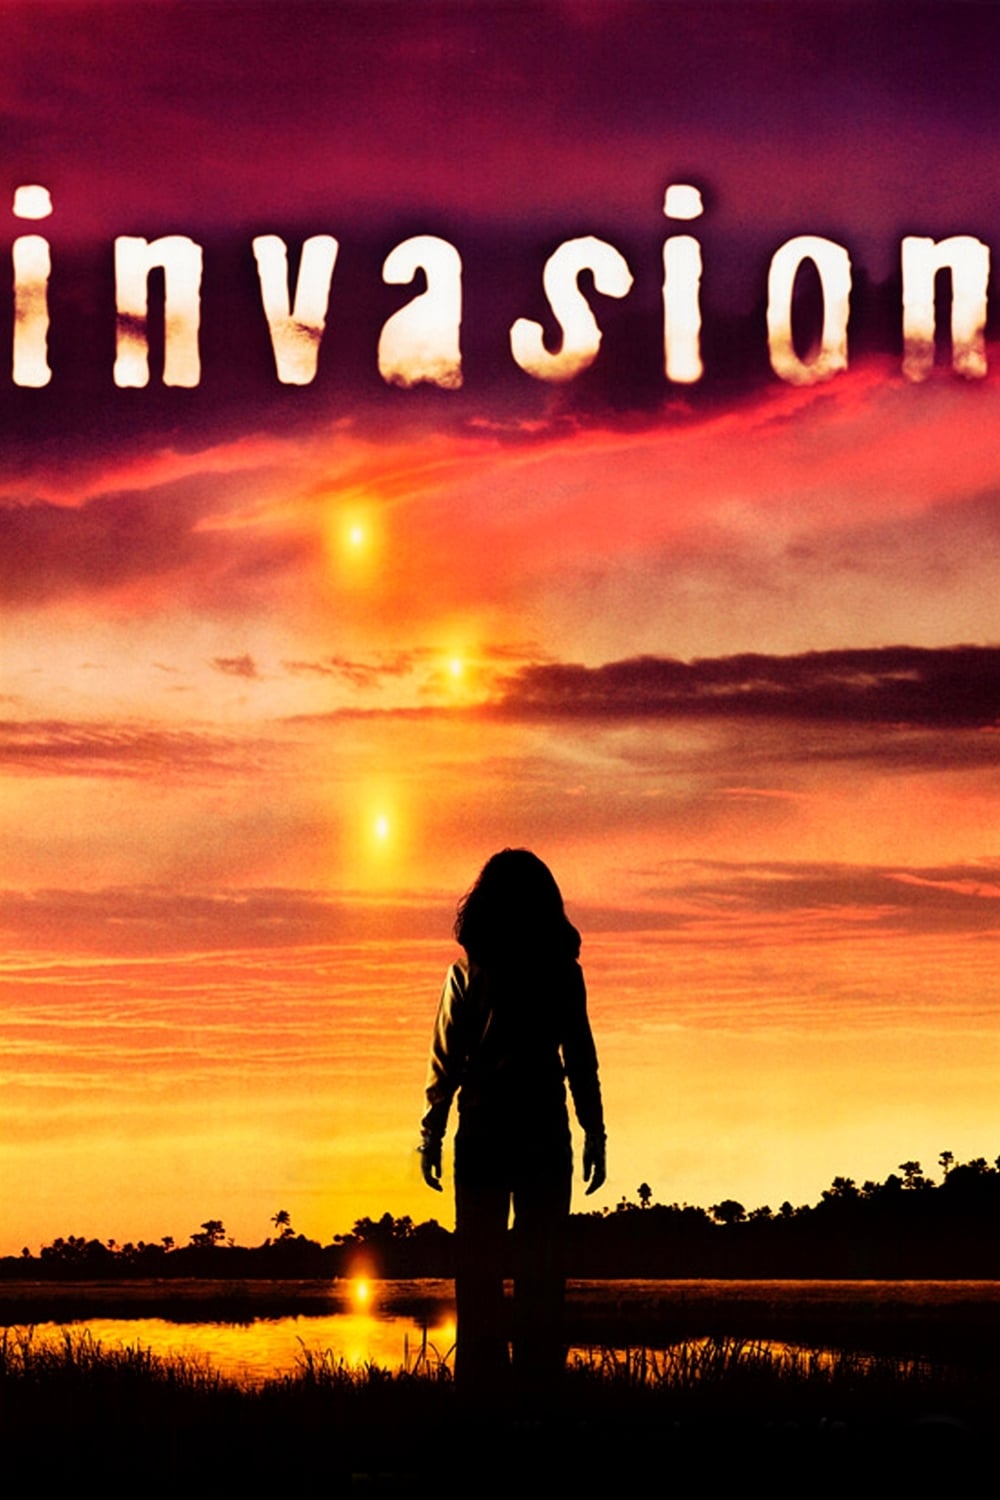 Plakát pro film “Invaze”